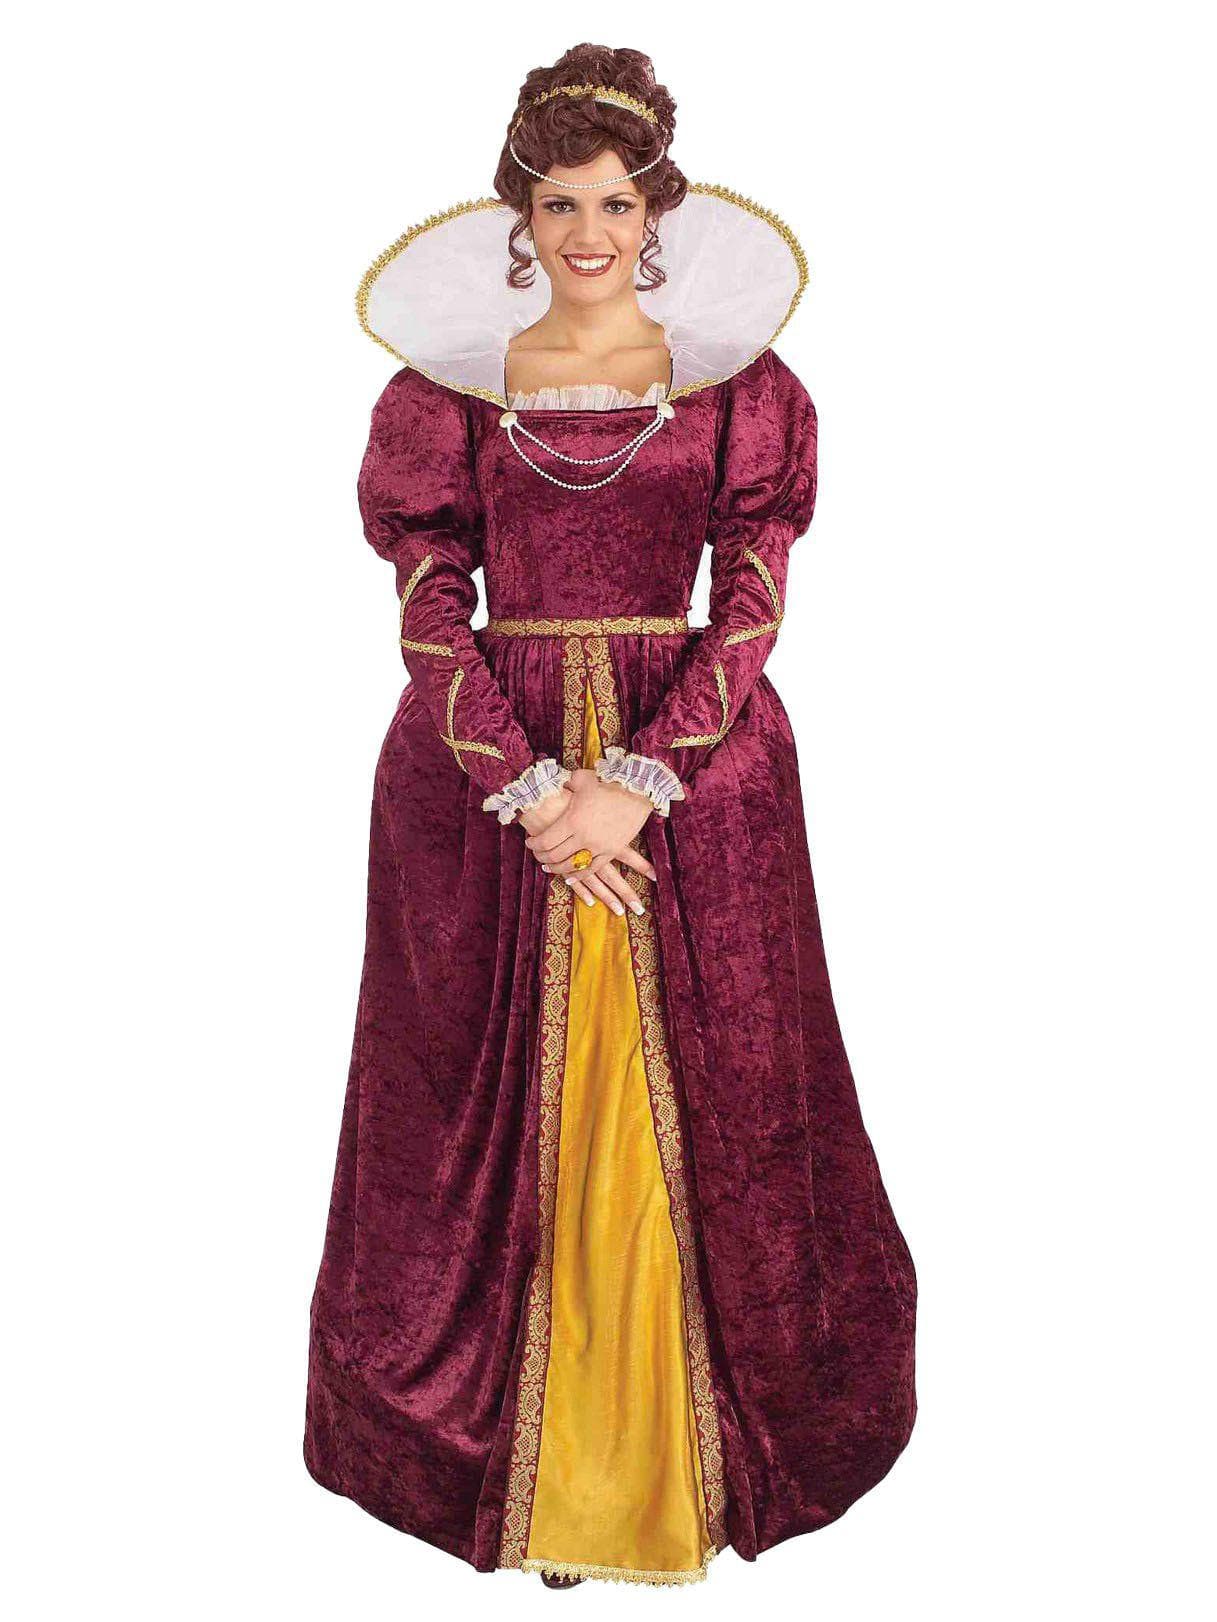 Adult Queen Elizabeth Costume - costumes.com